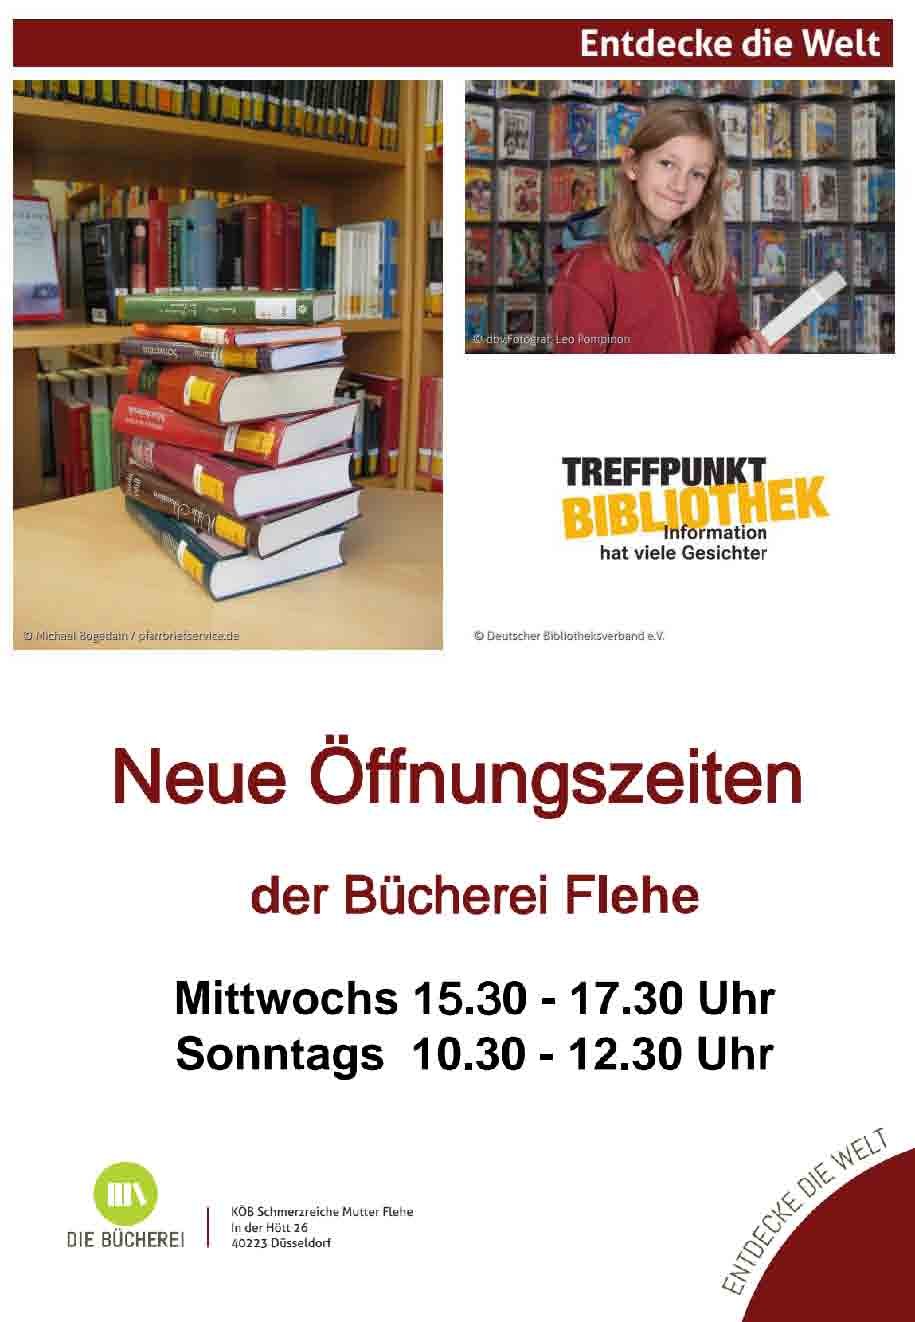 Neue Öffnungszeiten der Bücherei Flehe (c) KÖB Flehe der kat. Kirchengemeinde St. Bonifatius Düsseldorf